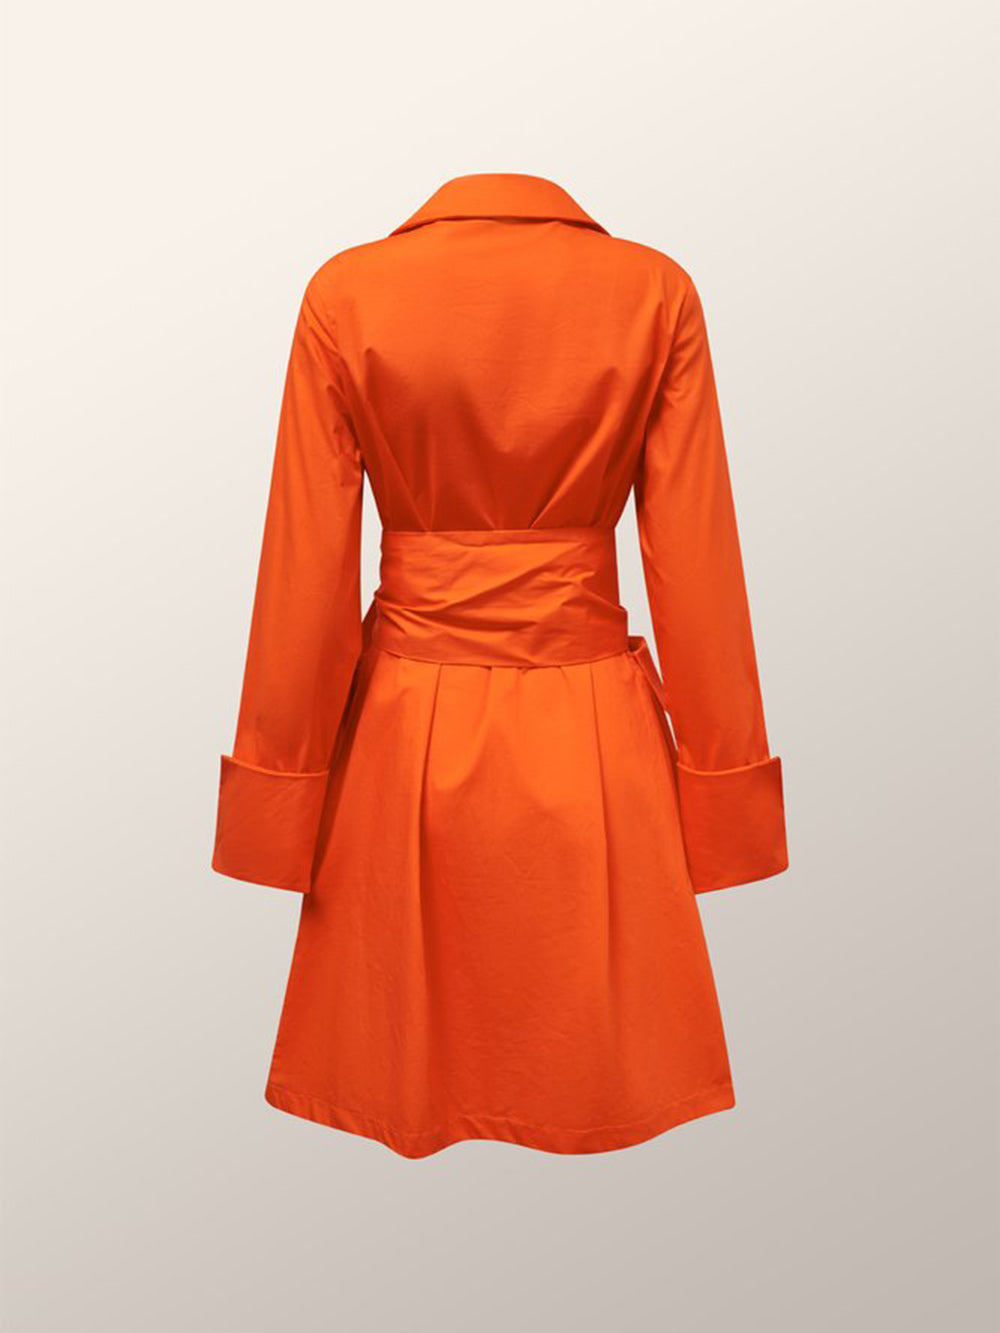 Πορτοκαλί ντυμένο βαμβακερό φόρεμα περιτυλίγματος-shirt